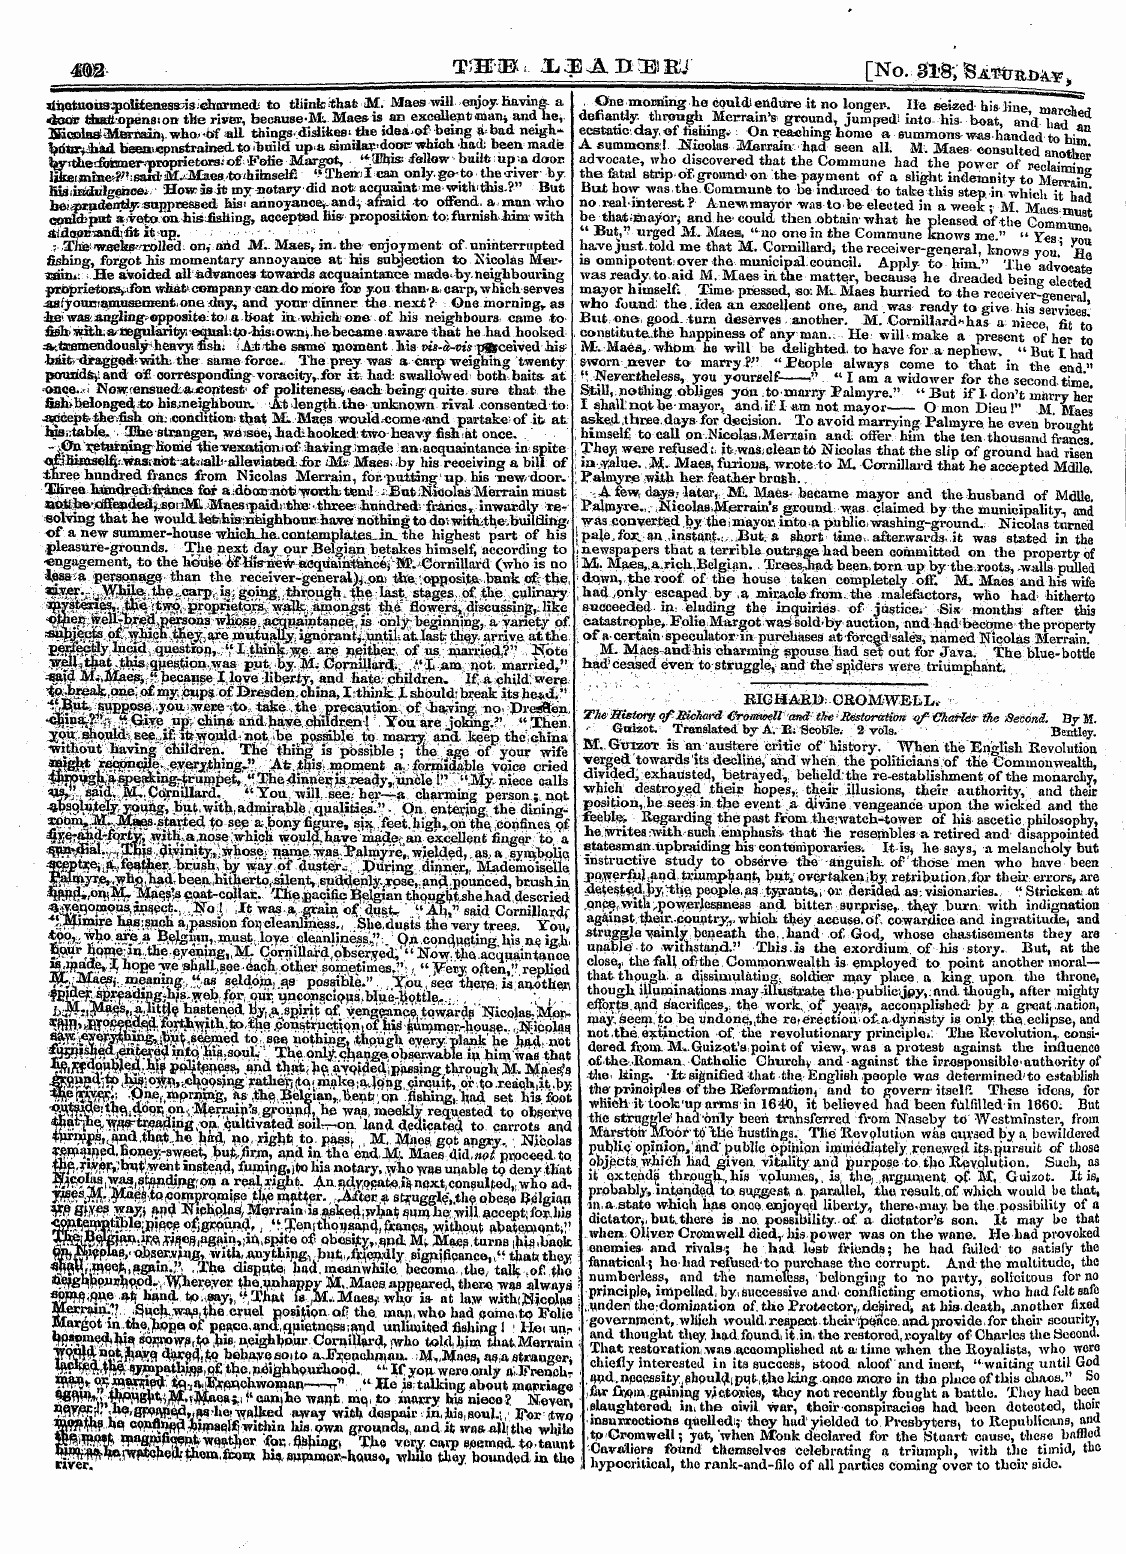 Leader (1850-1860): jS F Y, 2nd edition - «A- Tih-Jbu Jjjsaptblkj- [No. 31# , Saw ...